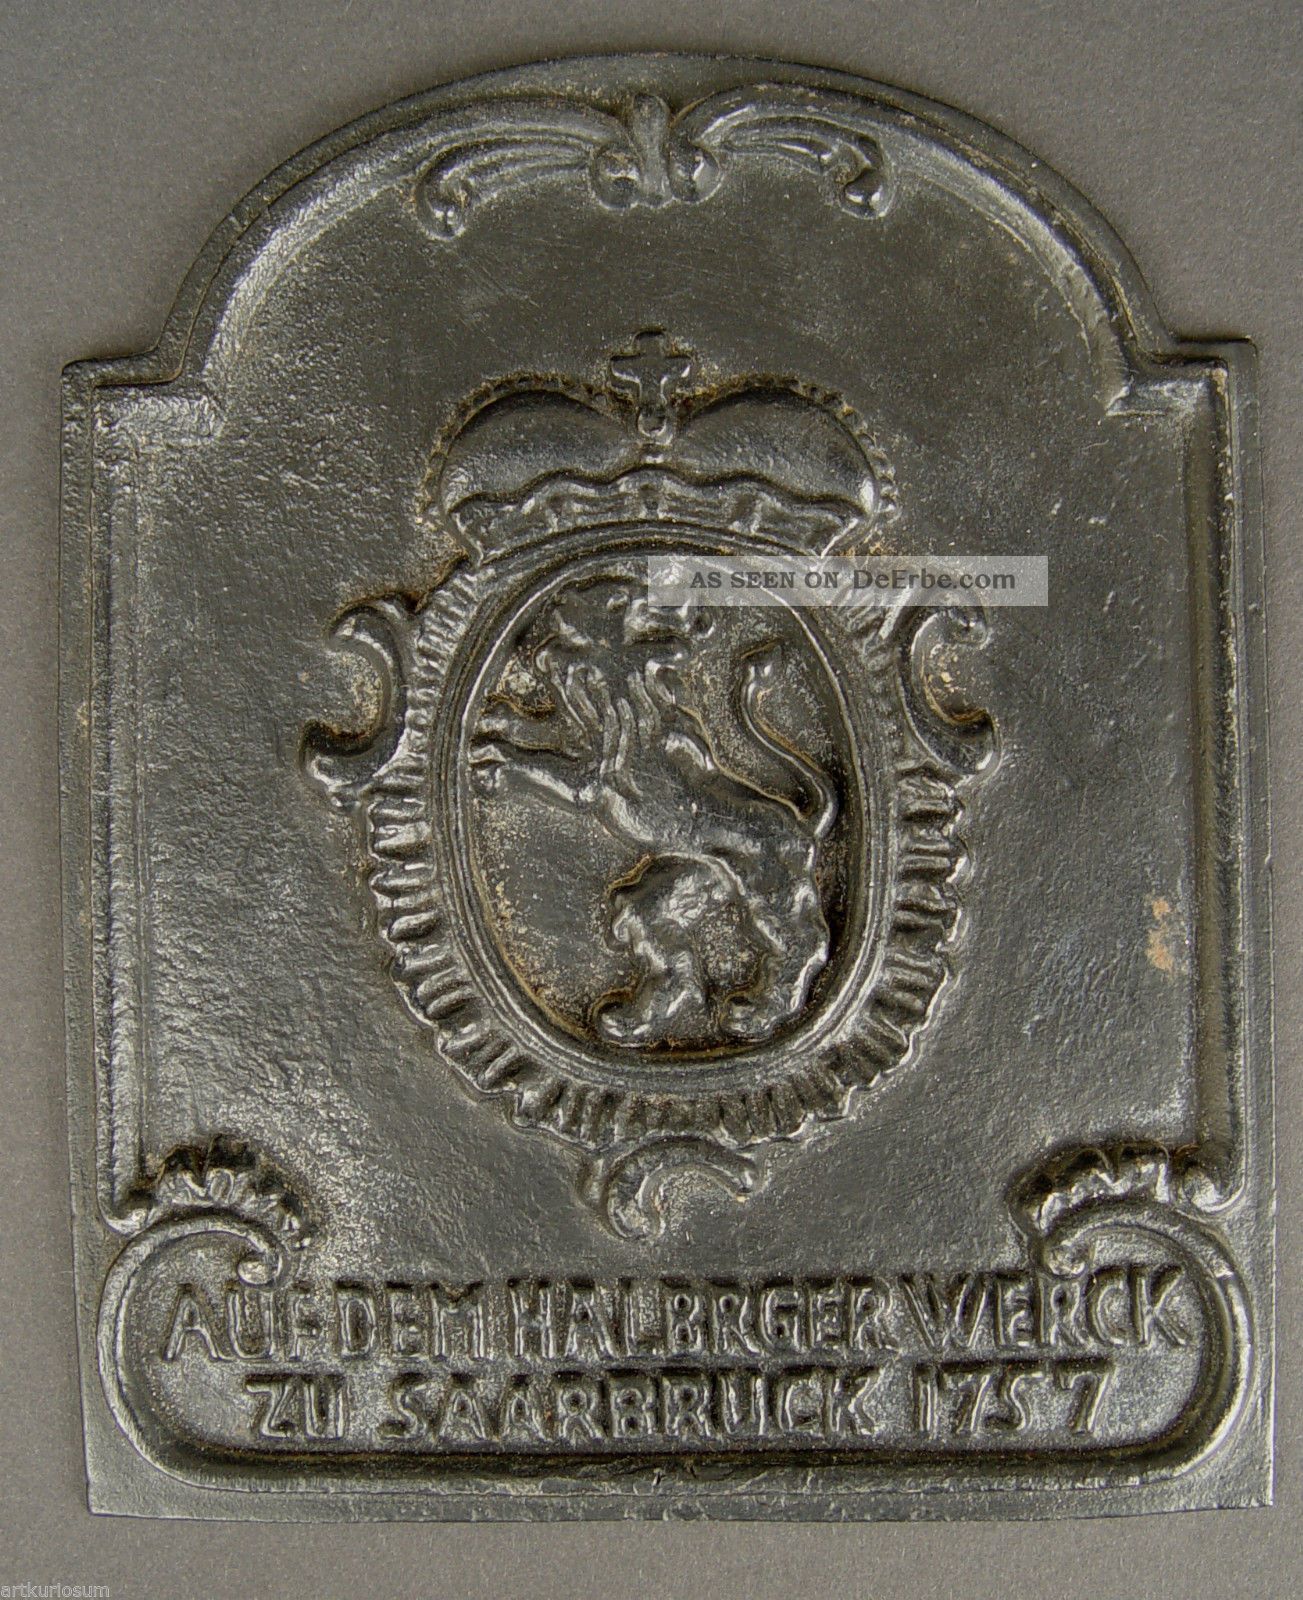 Barocke Eisenguss Platte,  Auf Dem Halbrger Werck,  Saarbruck 1757 Bronze Bild